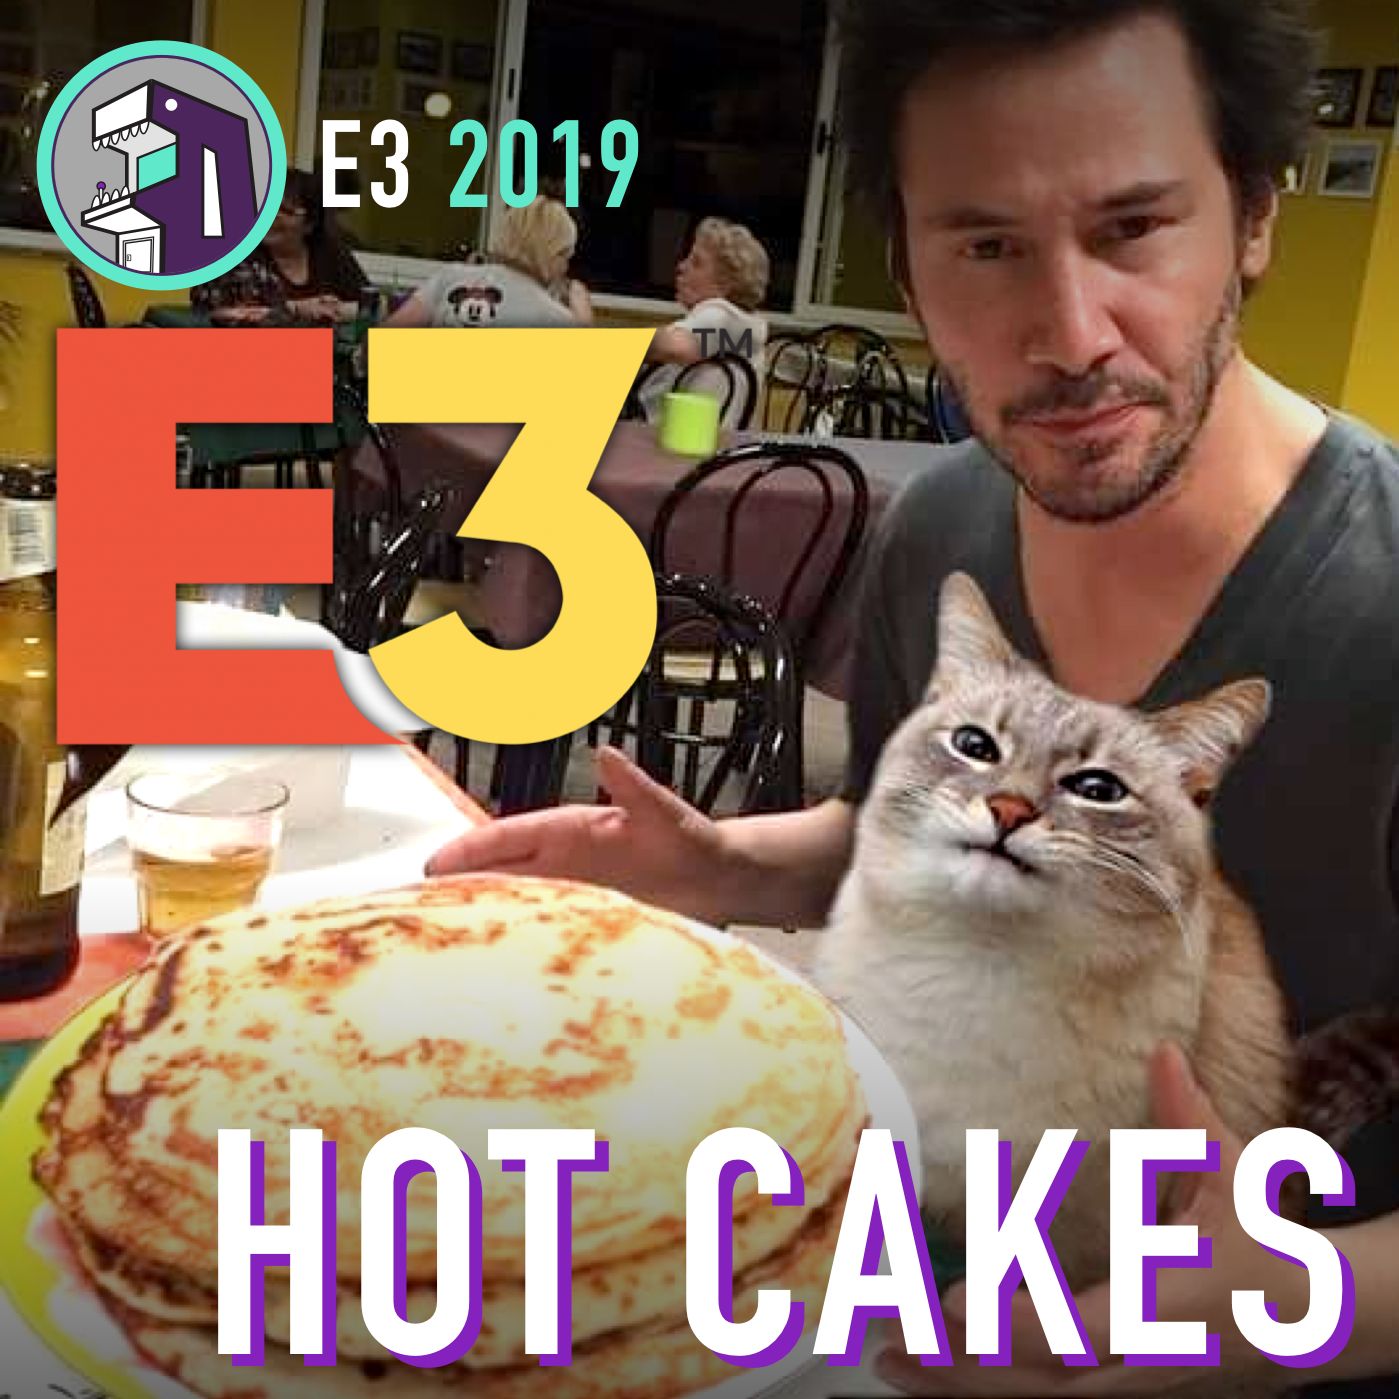 E3 2019 Hot Cakes!